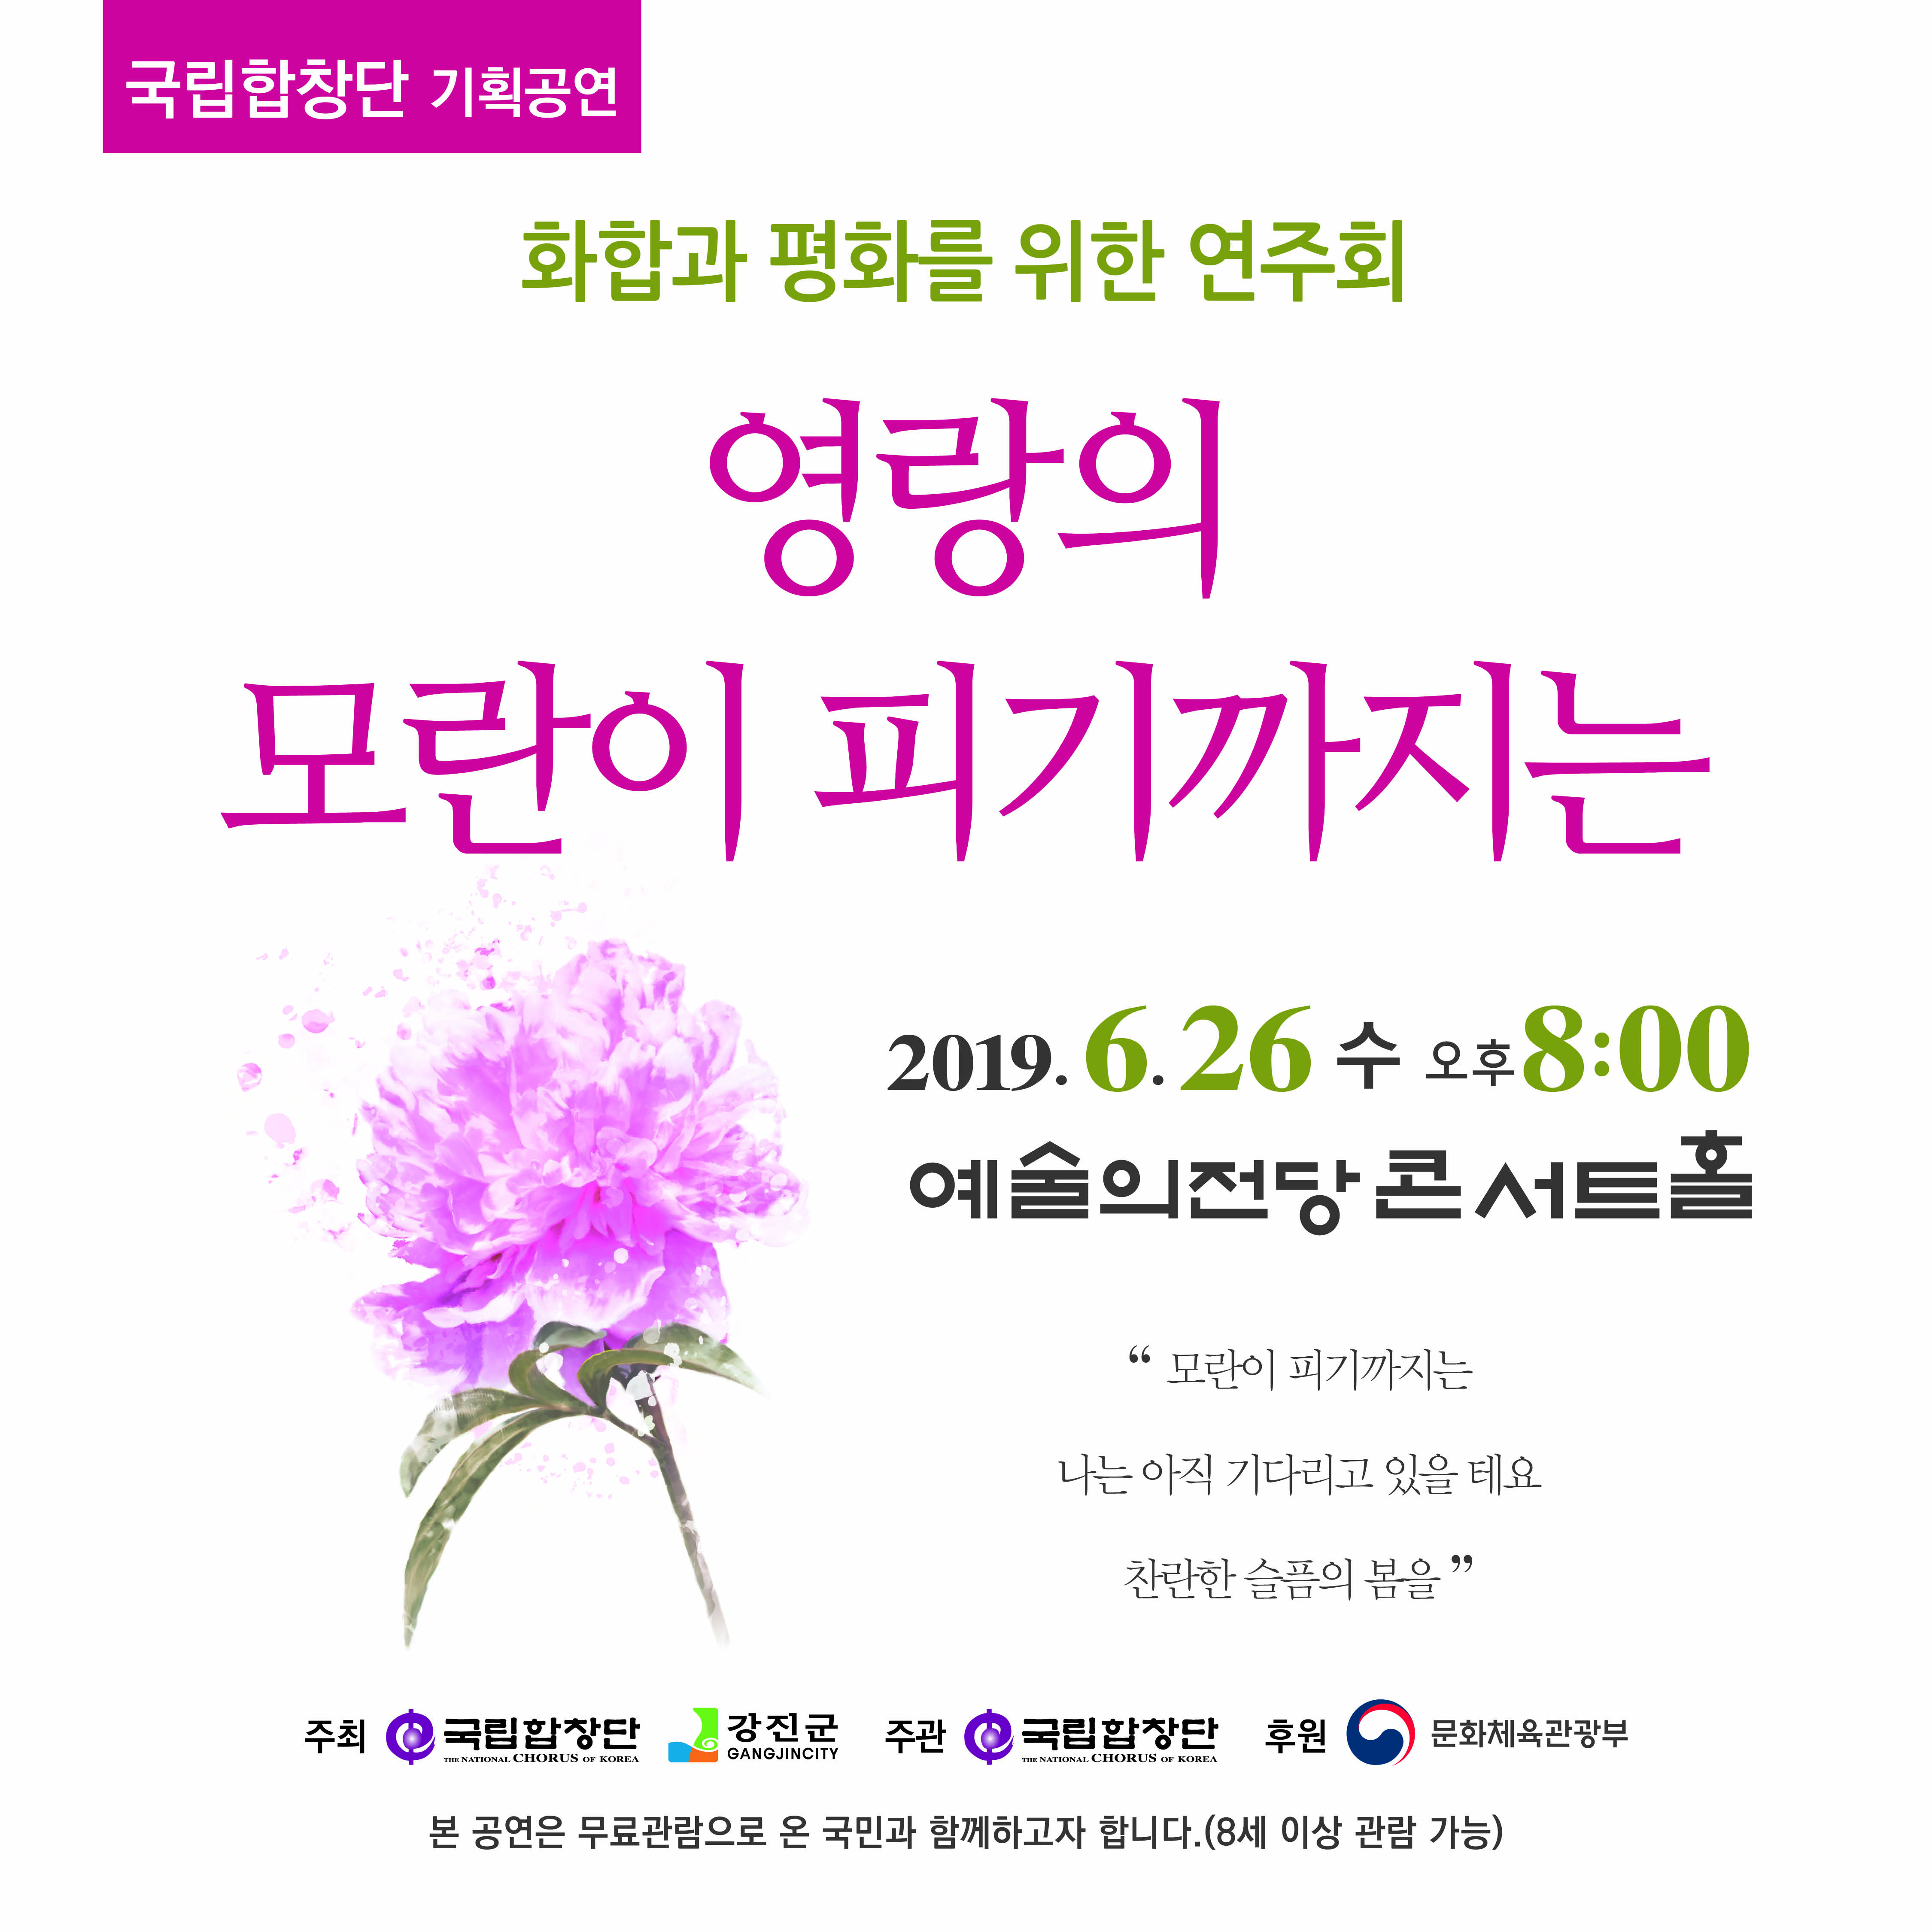 [서울][예술의 전당] 화합과 평화를 위한 연주회 <영랑의 모란이 피기까지는>